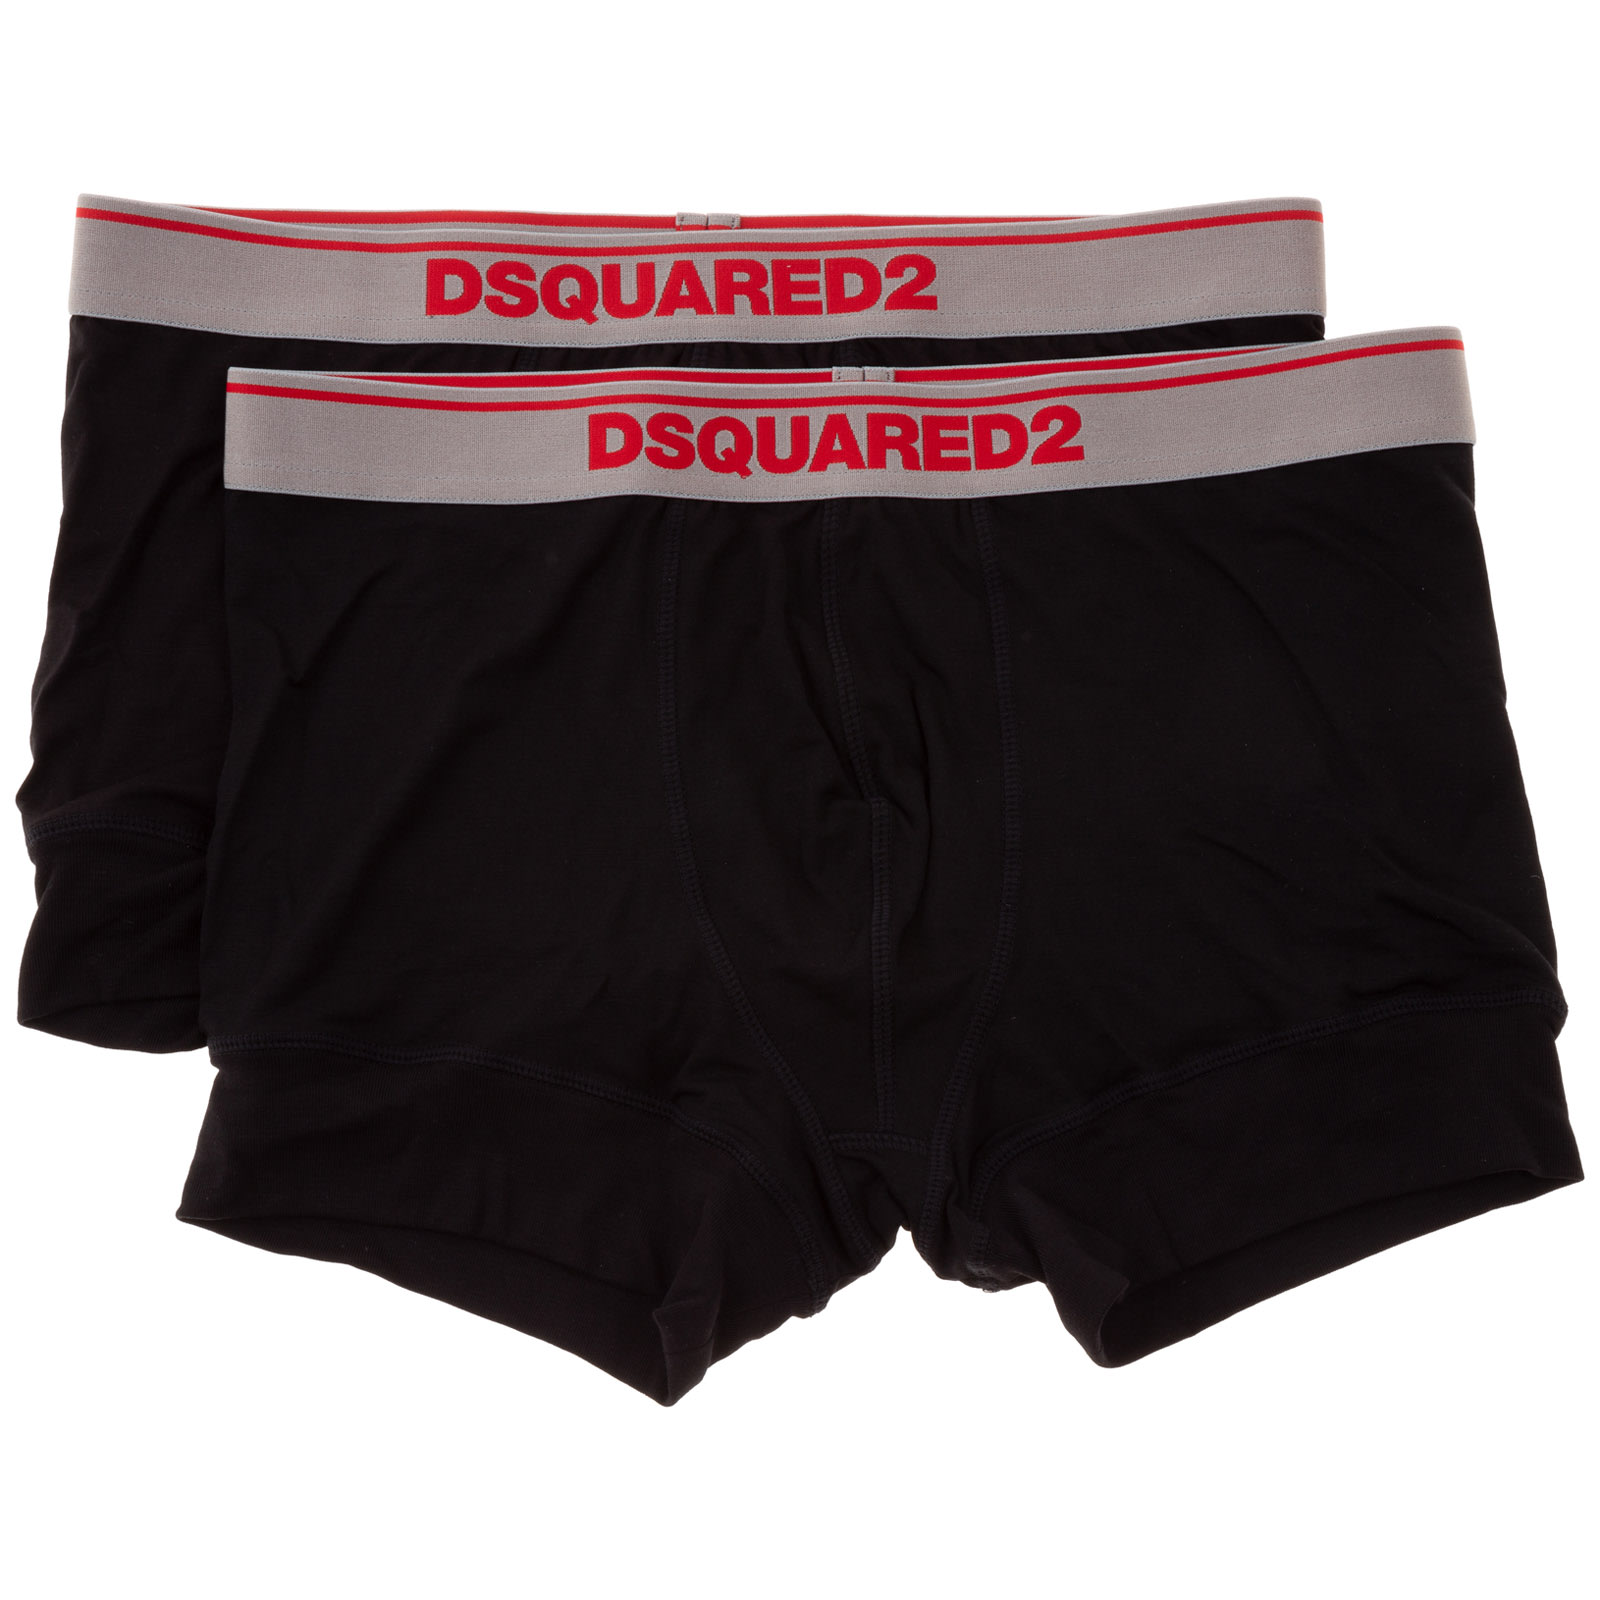 Dsquared2 Emilie Boxer Shorts